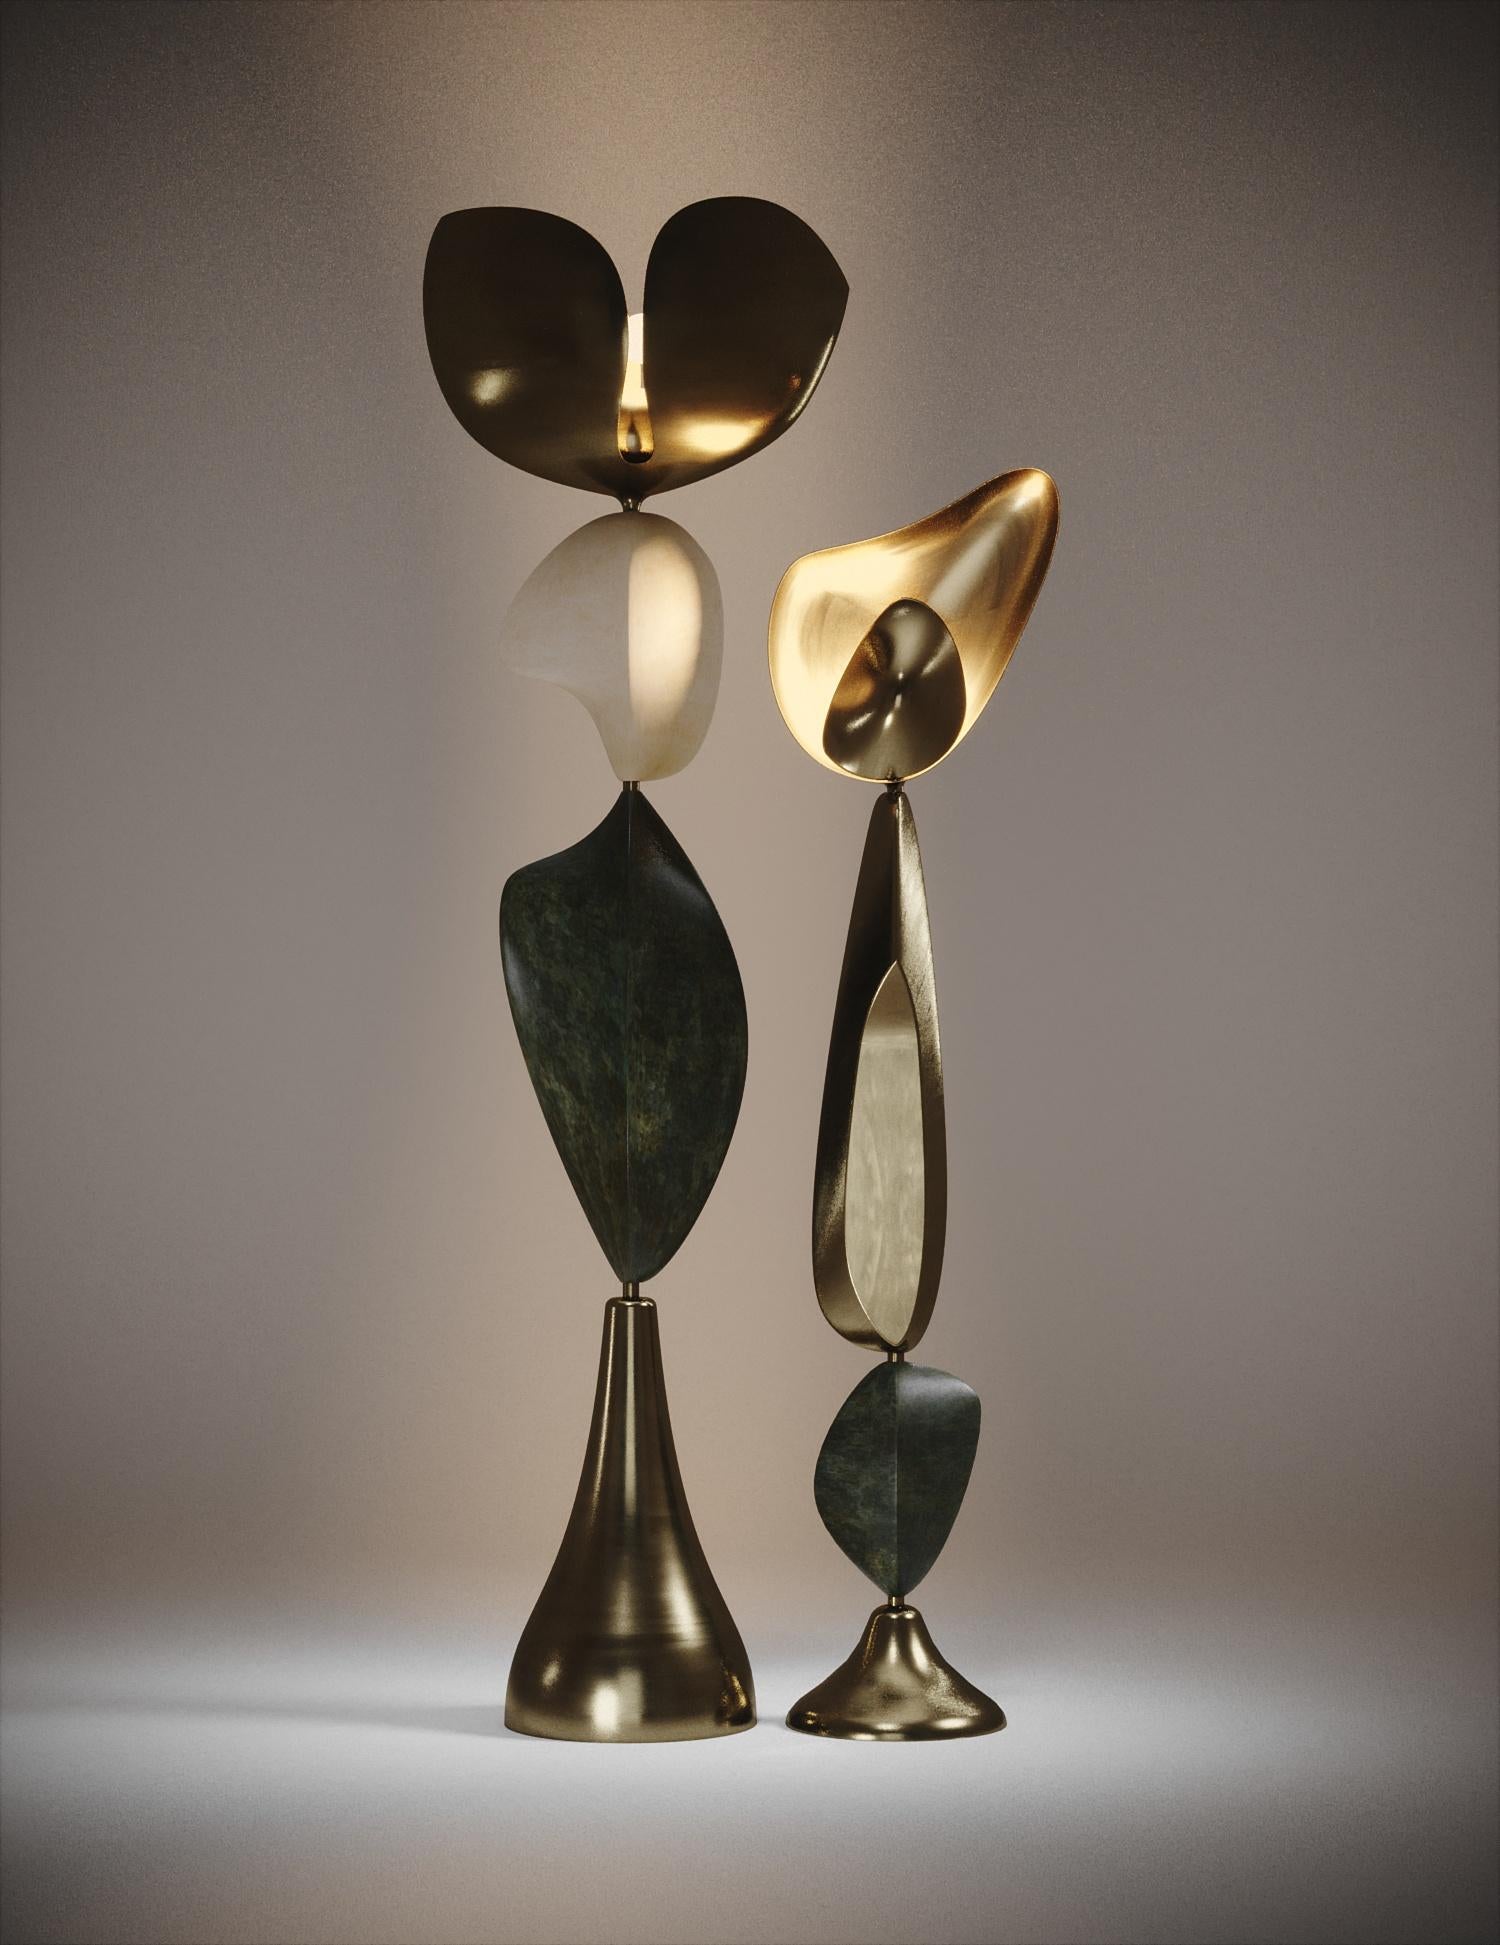 Le lampadaire Cosmo Moon de Feal Paris est une pièce fantaisiste et sculpturale, incrustée de laiton bronze-patine avec incrustation de parchemin ; créant une sensation vintage à la pièce. Les formes amorphes sont une réinterprétation abstraite et